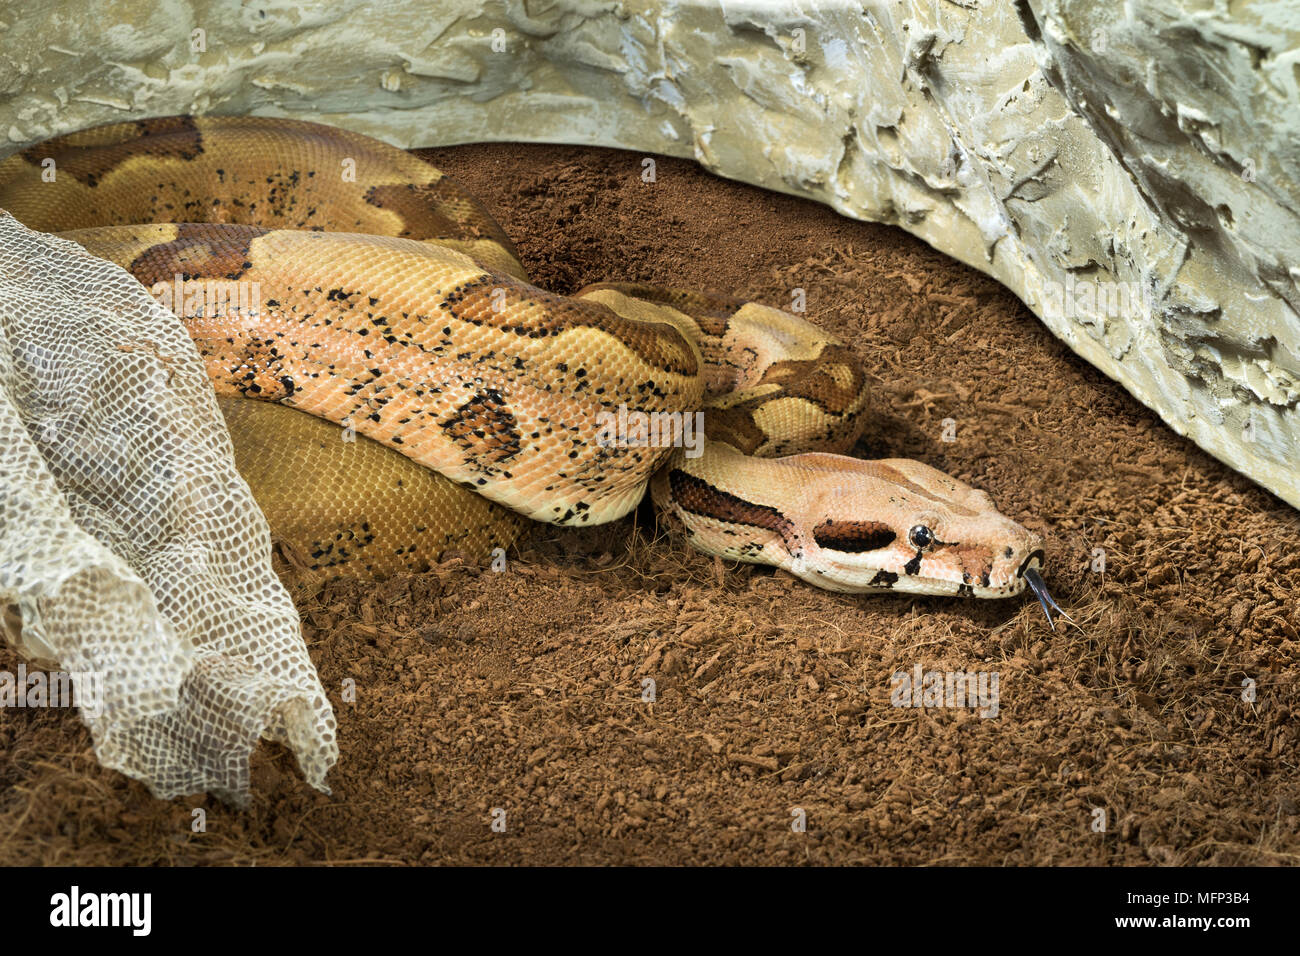 Boa constrictor imperator - formulaire de mutation Jungle Hypo. Albino - femmes. Serpent à côté de sa vieille peau Banque D'Images